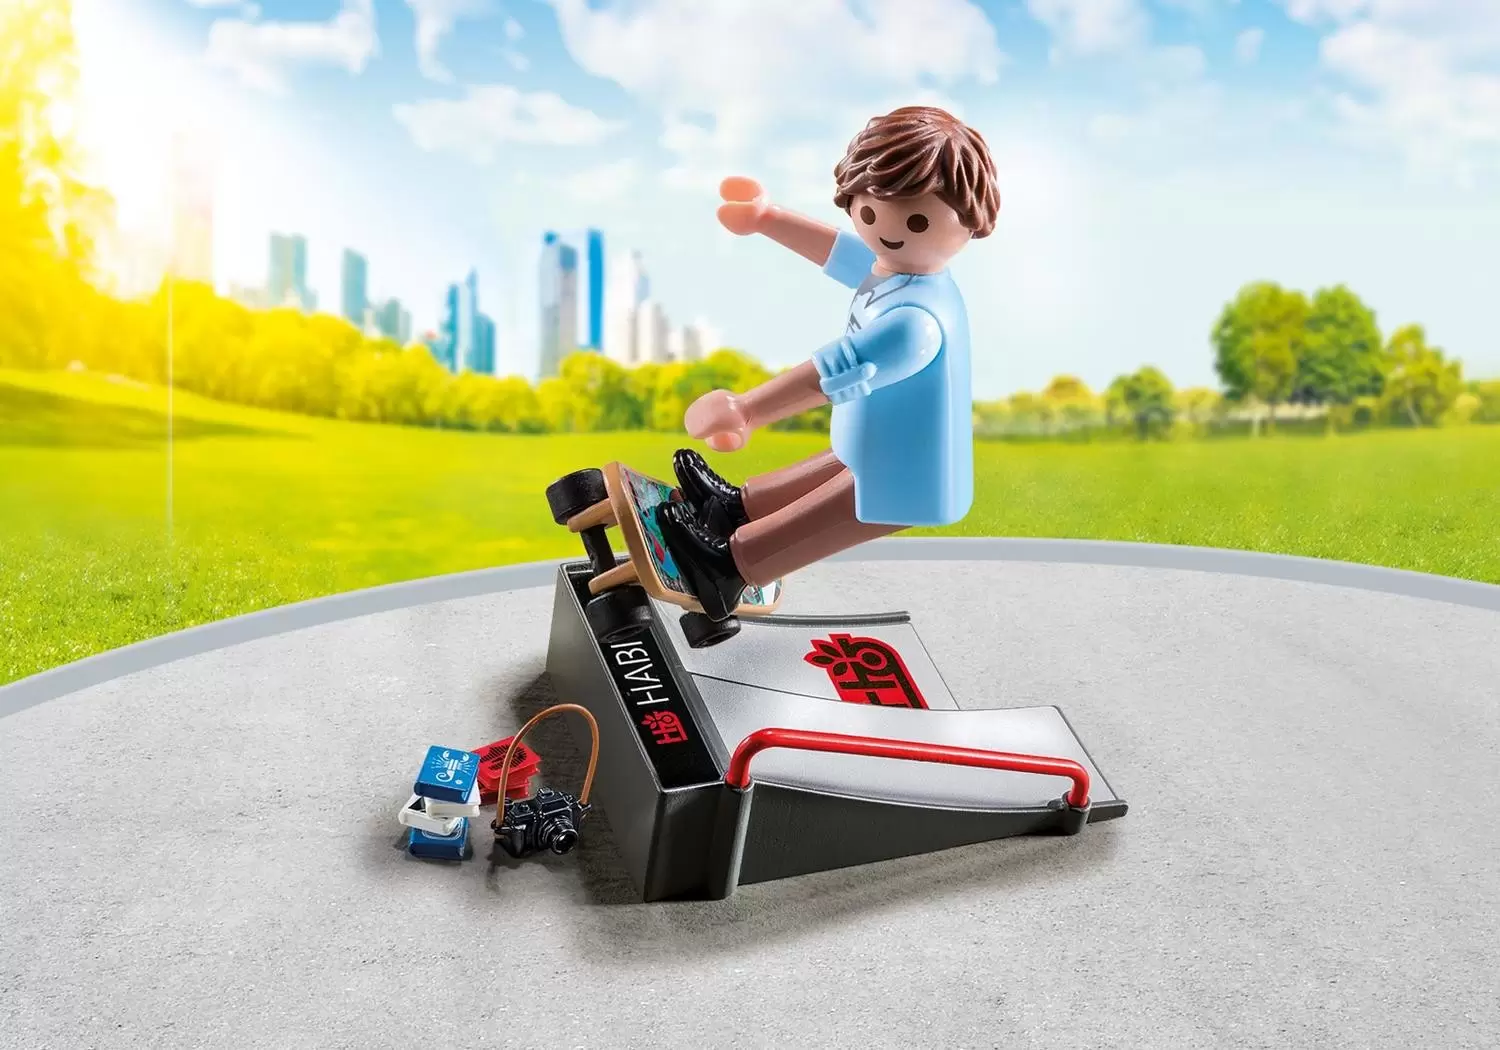 Playmobil SpecialPlus - Skater with ramp